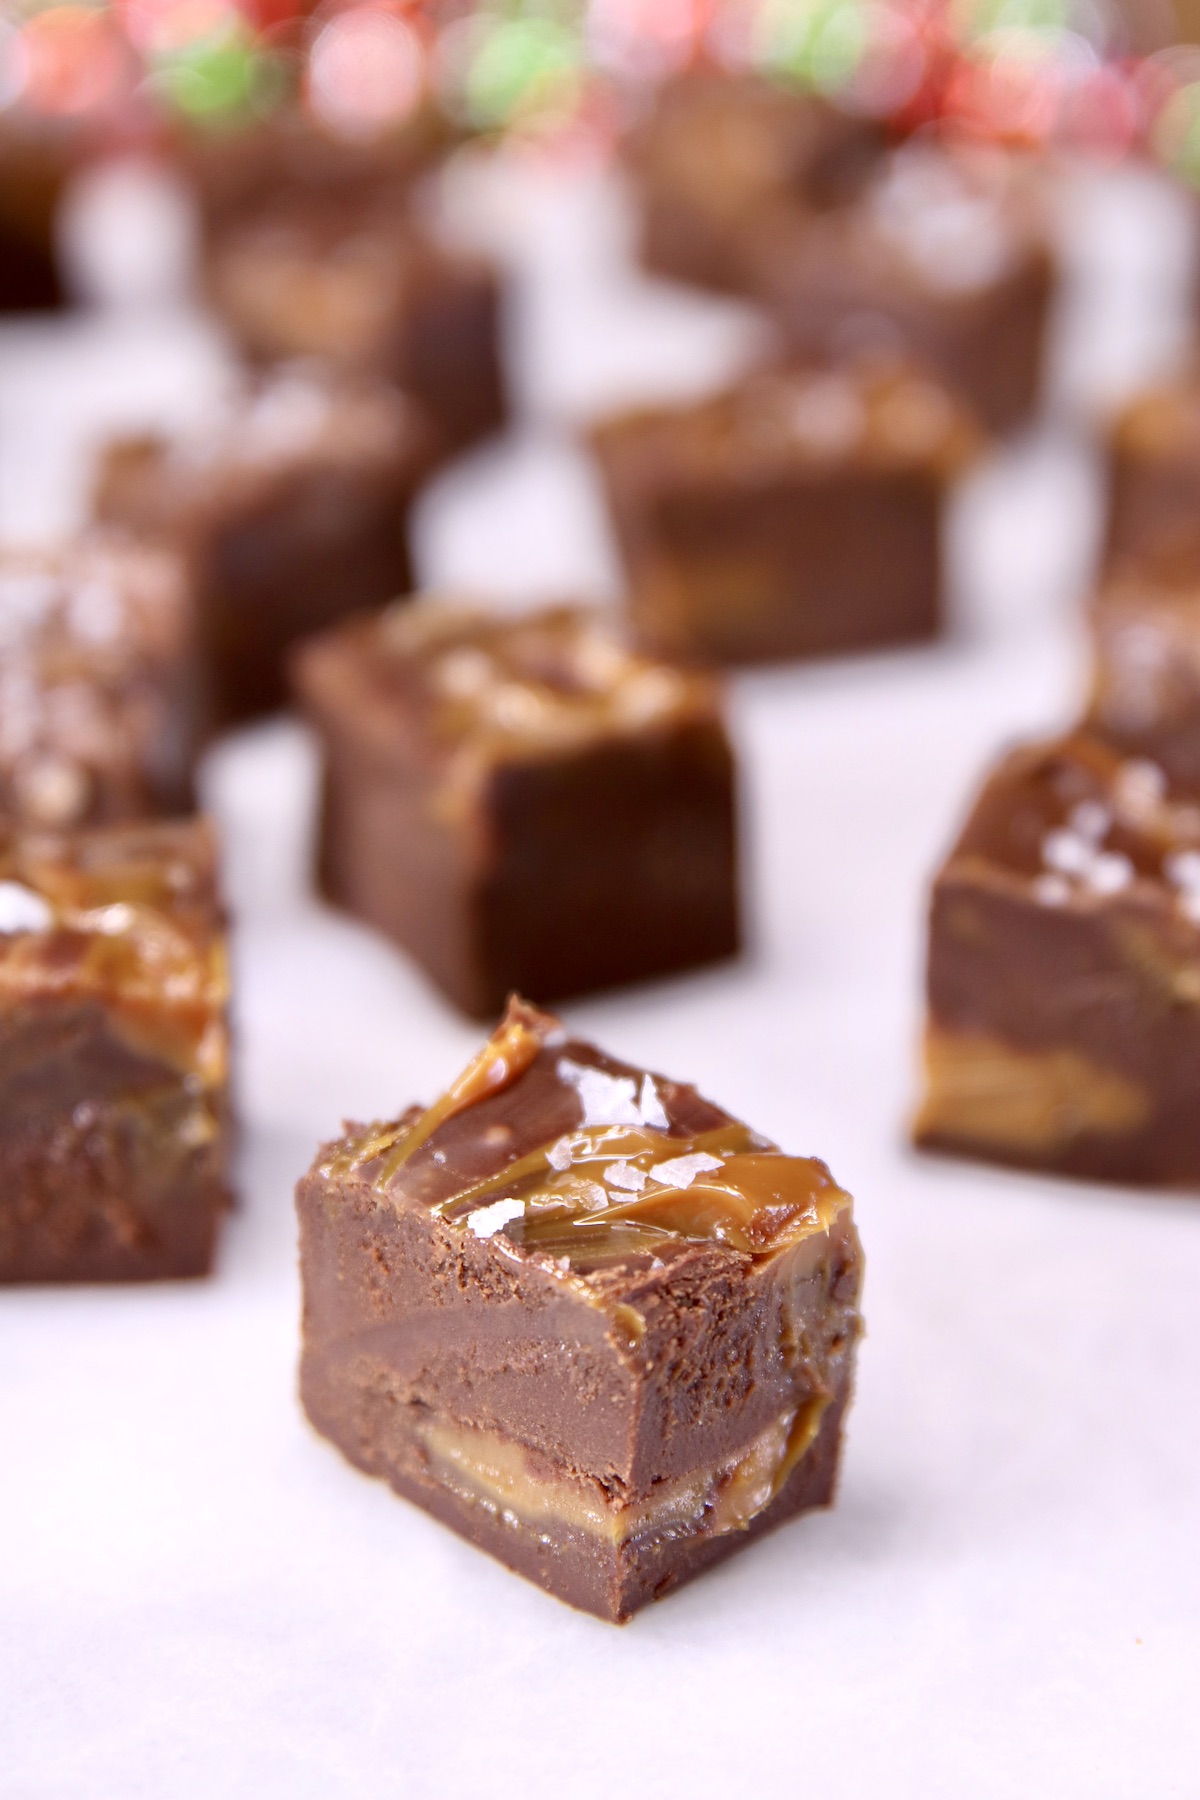 caramel chocolate fudge in slices